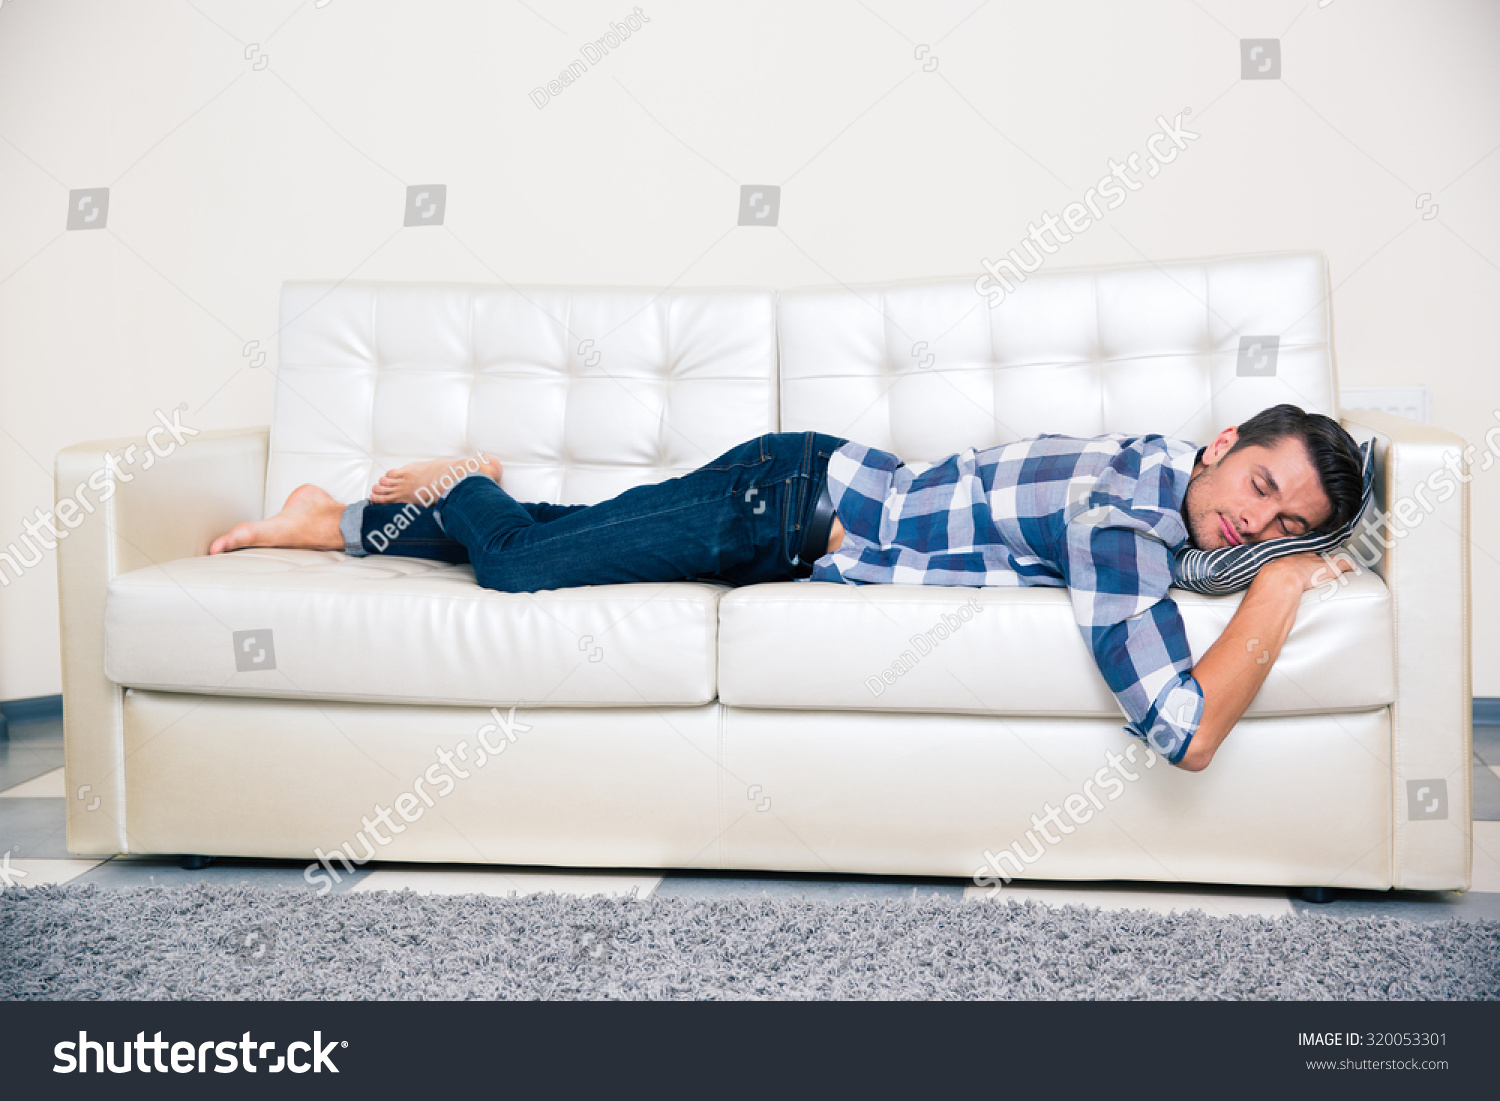 Ничем просто лежу на диване. Человек на диване. Спящий парень на диване. Человек лежит на диване. Человек лежит на спине на диване.